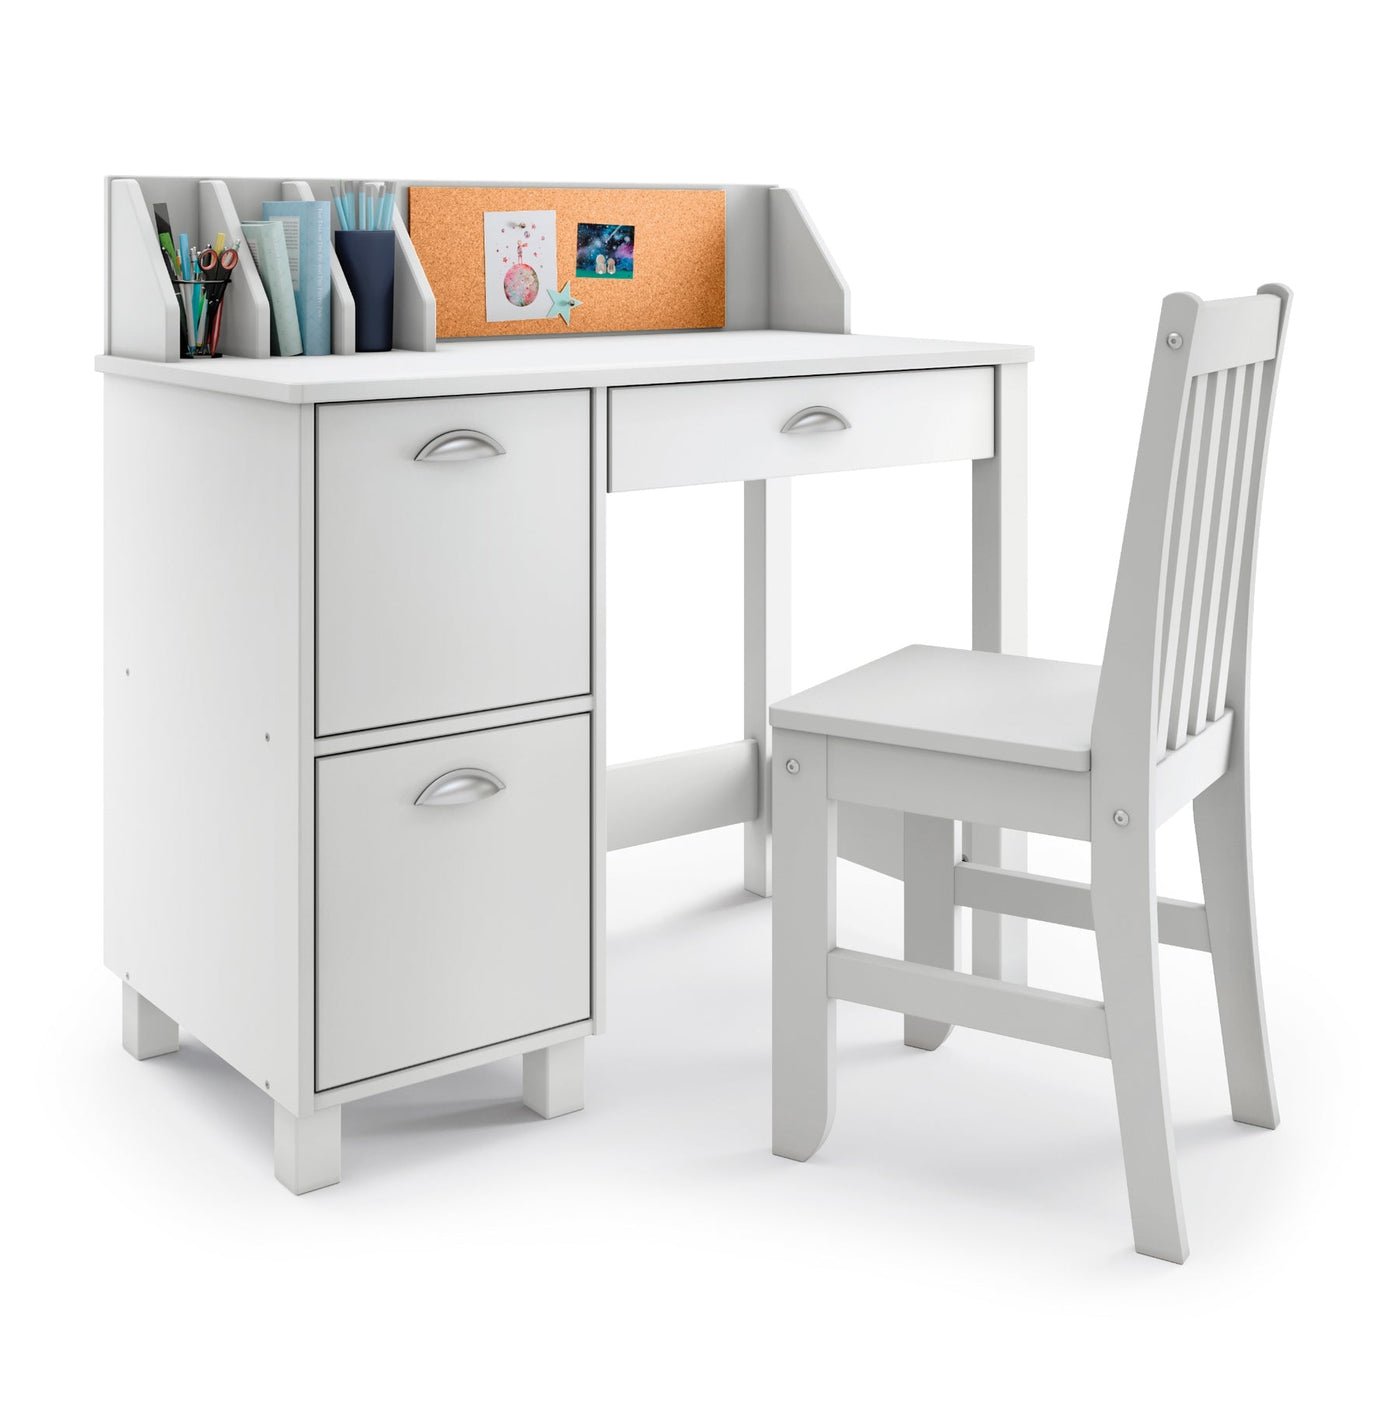 P'kolino Kids Desk and Chair - White